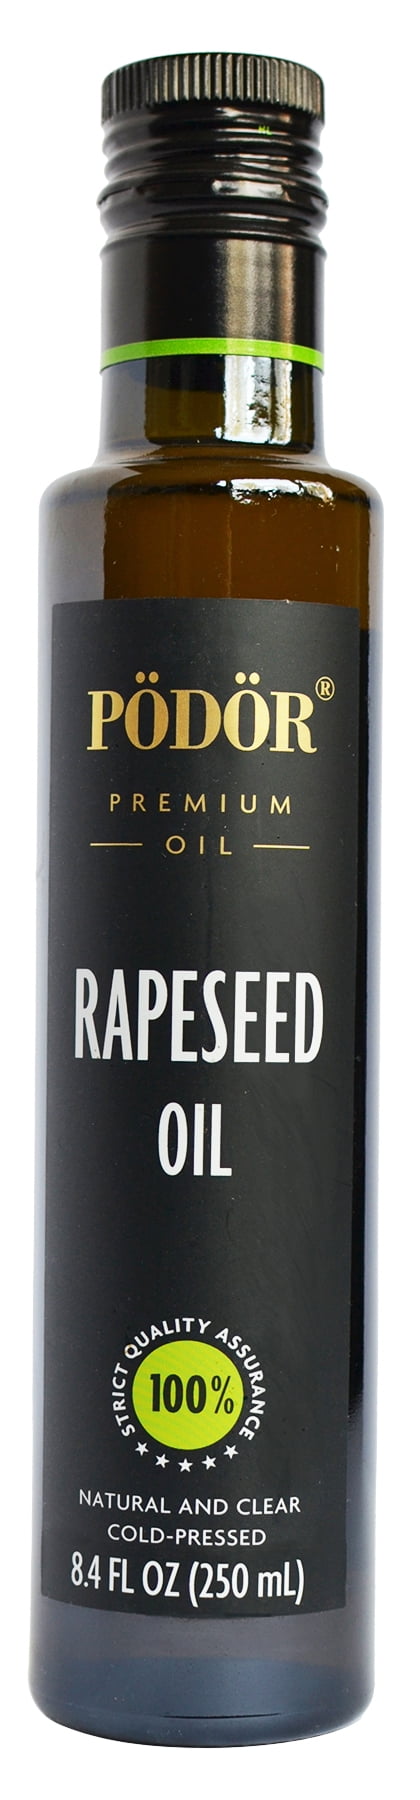 PÖDÖR Premium Rapeseed Oil - 8.4 fl. Oz. - Cold-Pressed, 100% Natural ...